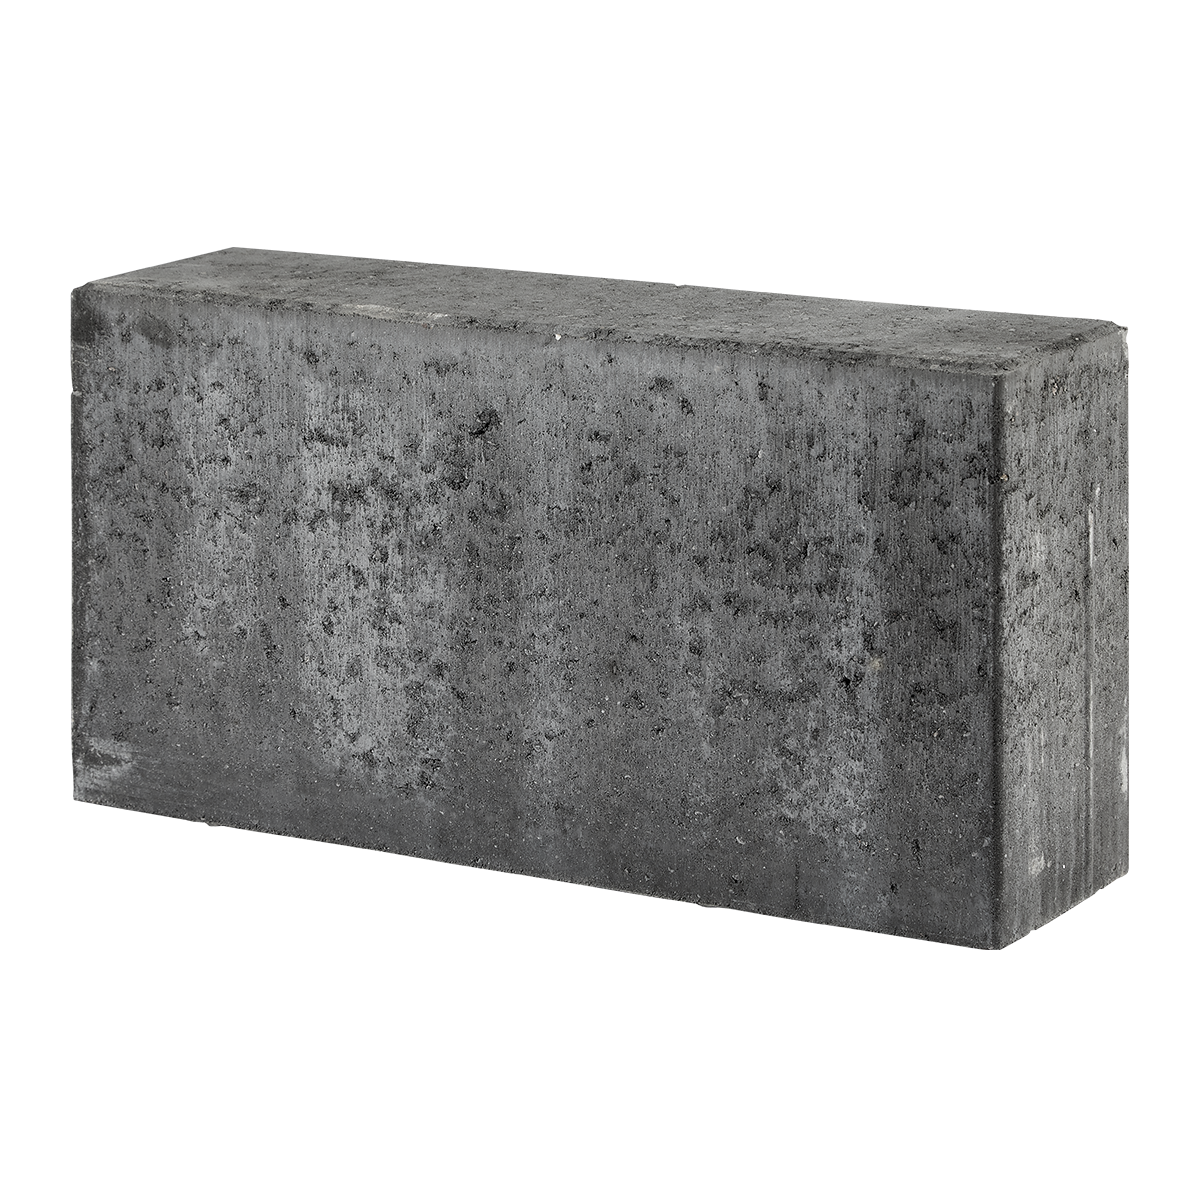 Albertslund-tiefbordrandsteine 15x30x60 cm Anthrazit